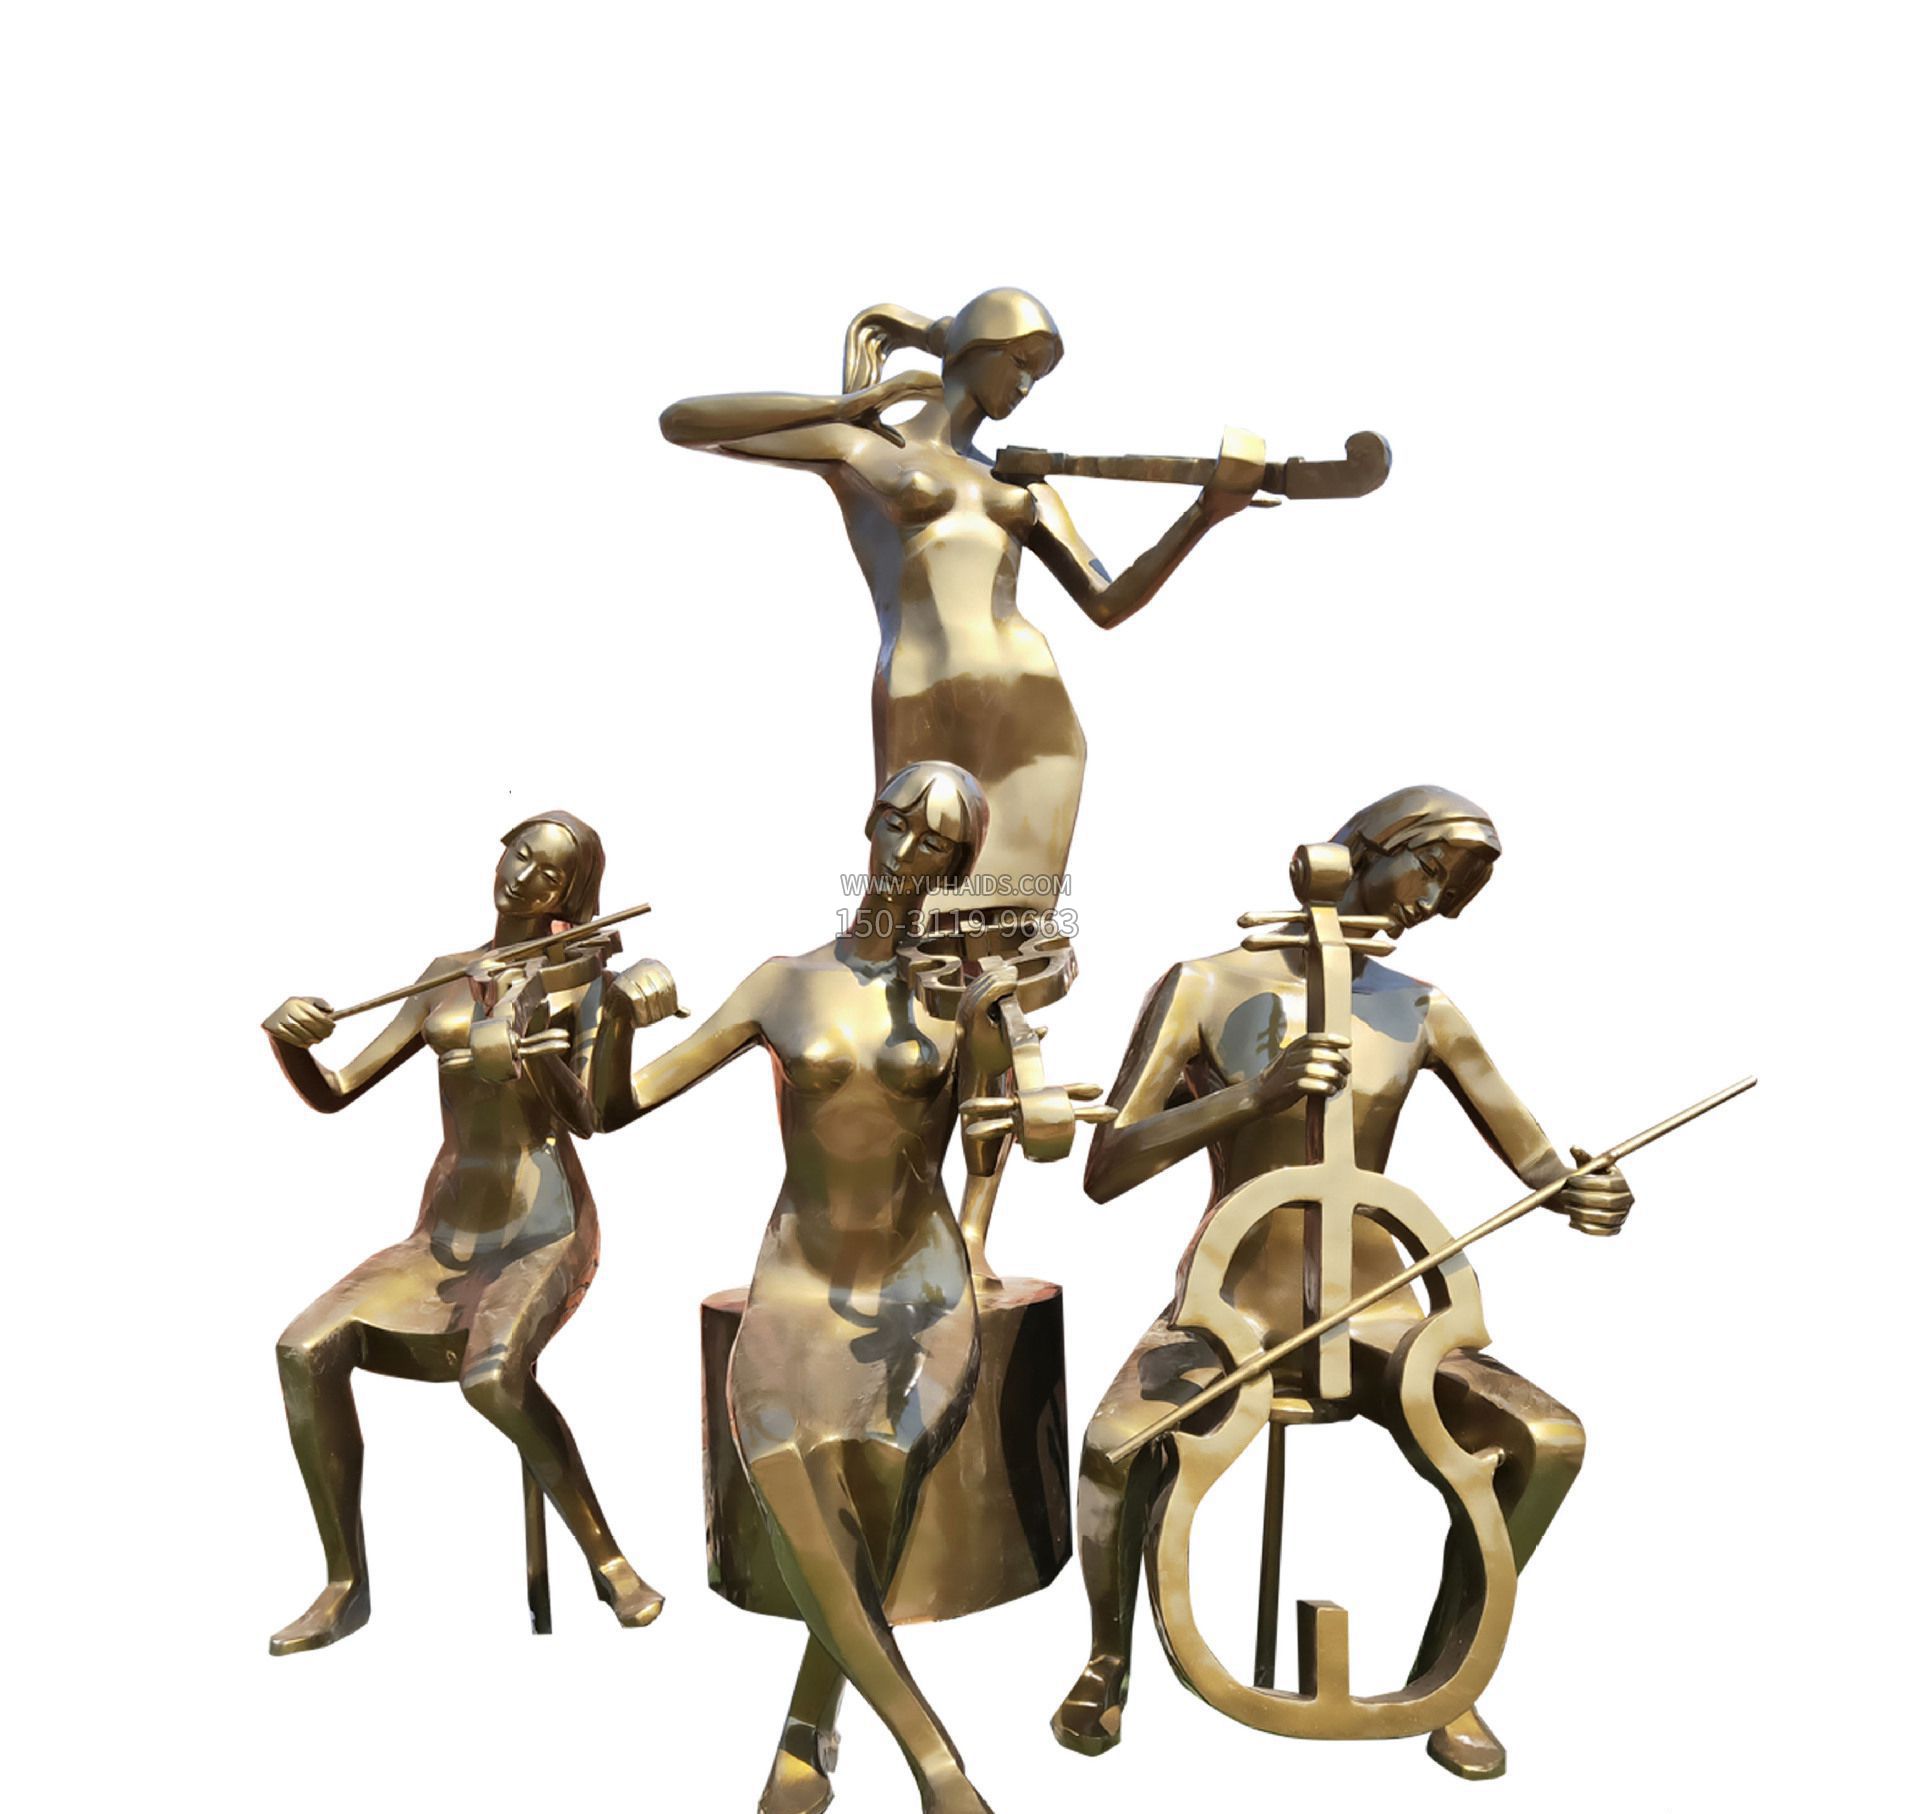 抽象大型乐队吹拉弹唱人物铜雕雕塑